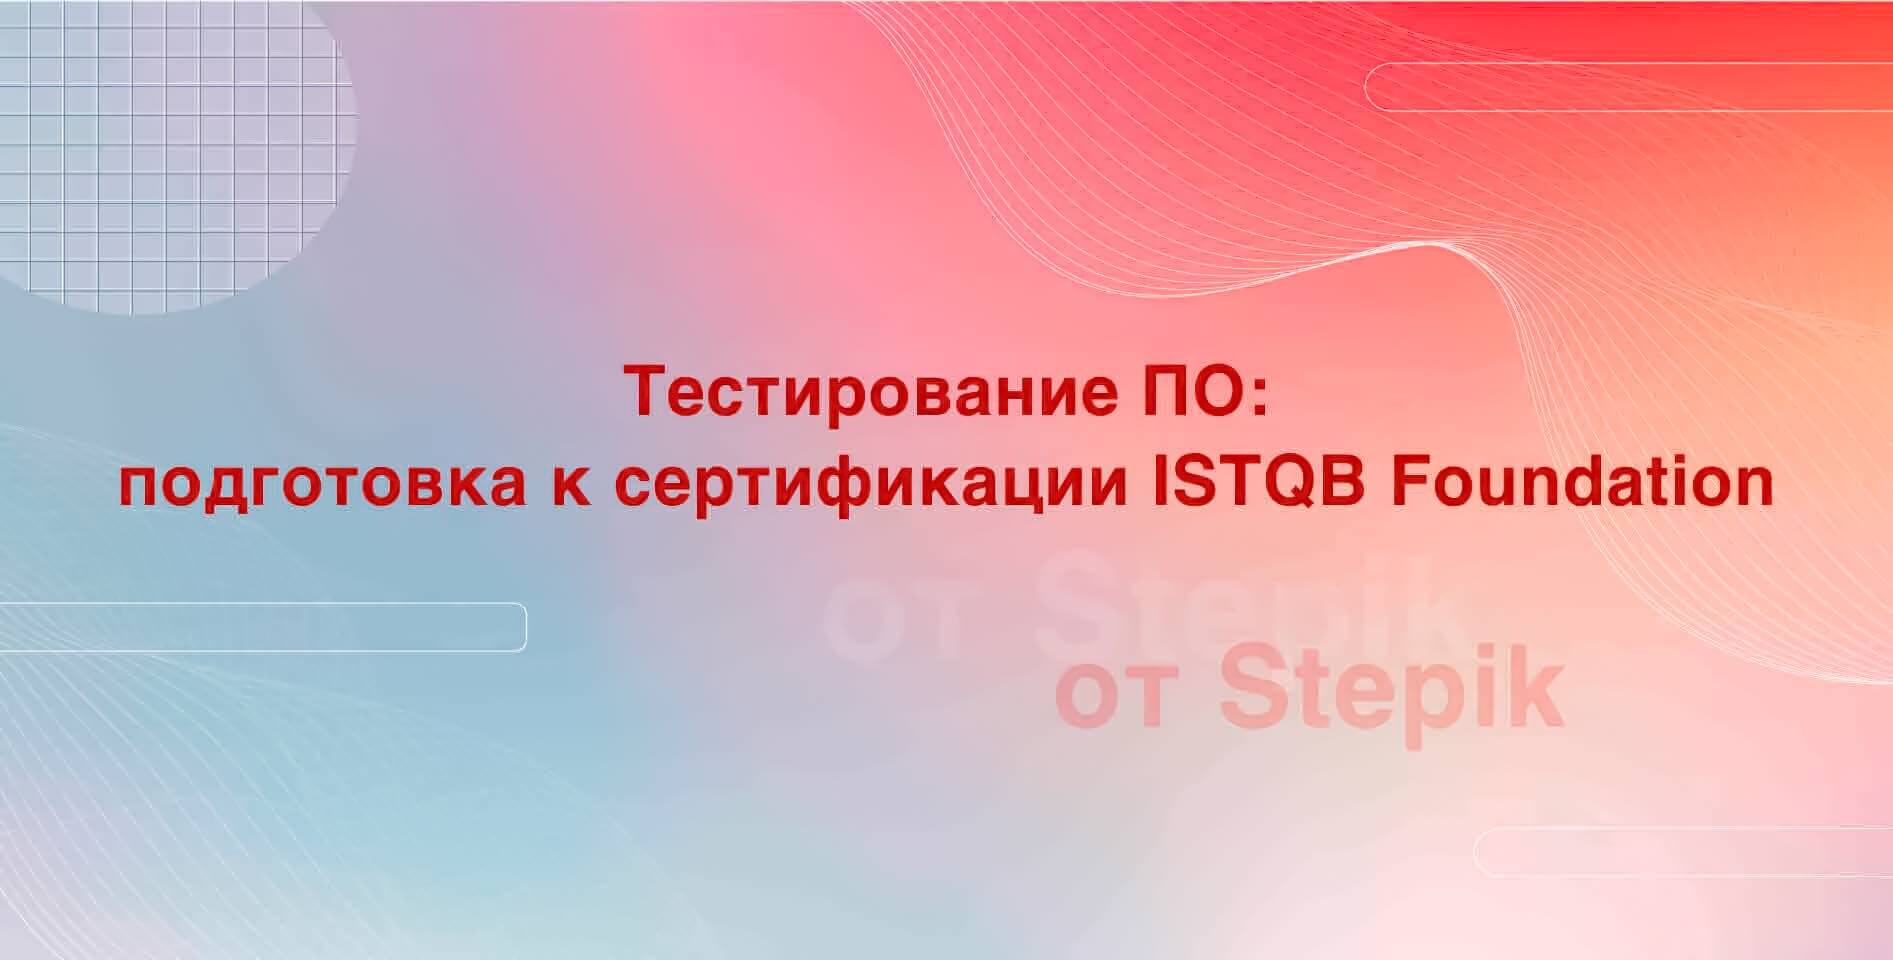 Stepik — Тестирование ПО: подготовка к сертификации ISTQB Foundation‎